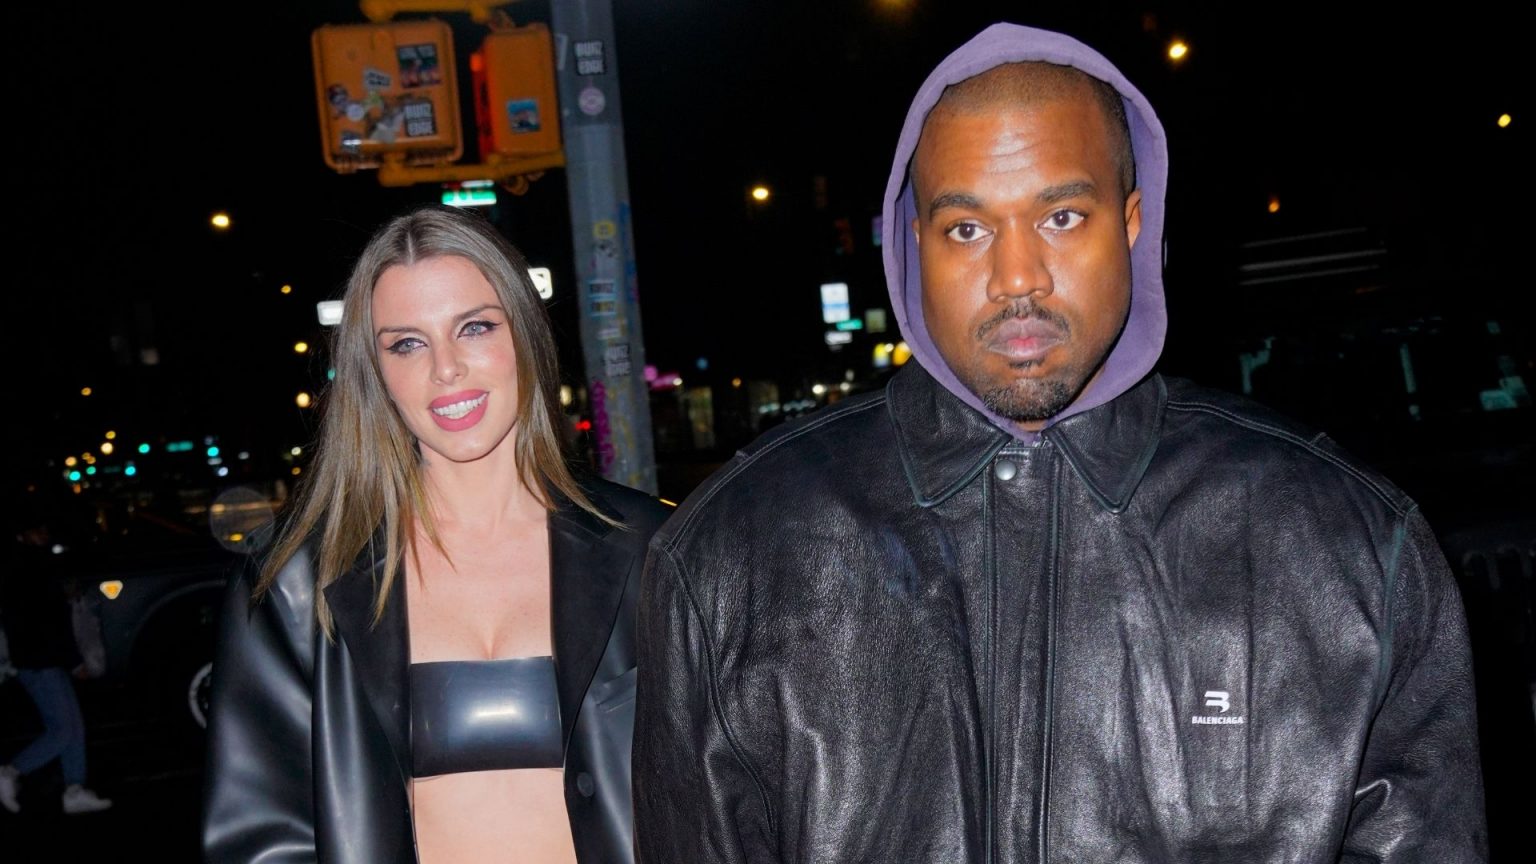 Julia Fox confiesa que su relación con Kanye West fue un montaje con momentos "reales"